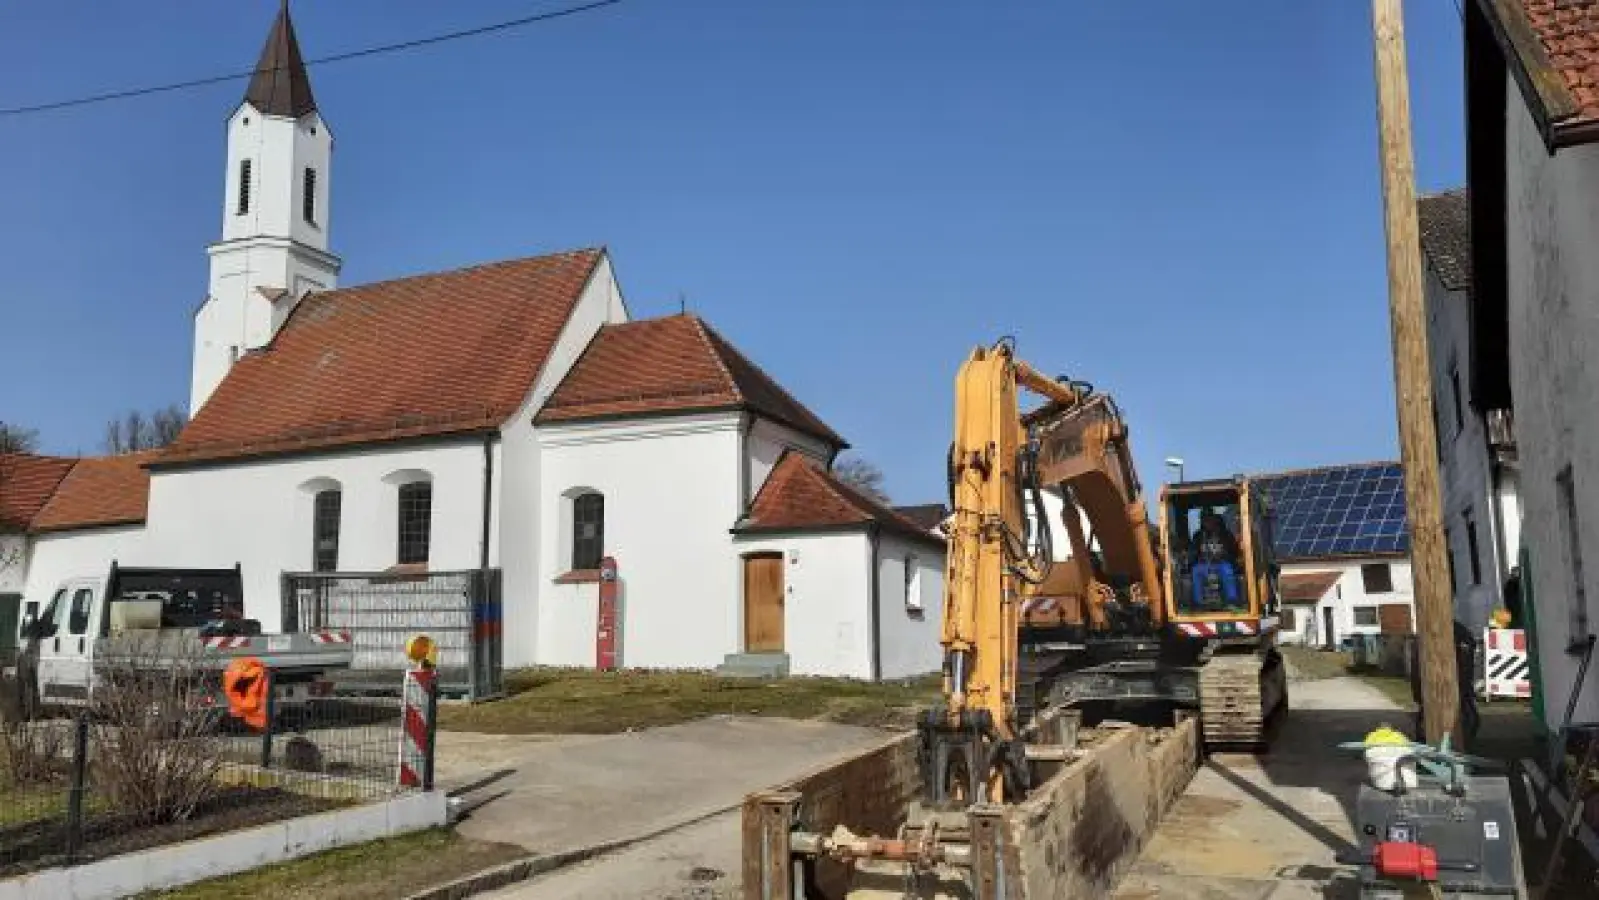 Über vier Millionen Euro gibt die Gemeinde Hollenbach für Kanalbau aus. Derzeit laufen Arbeiten in Mainbach.